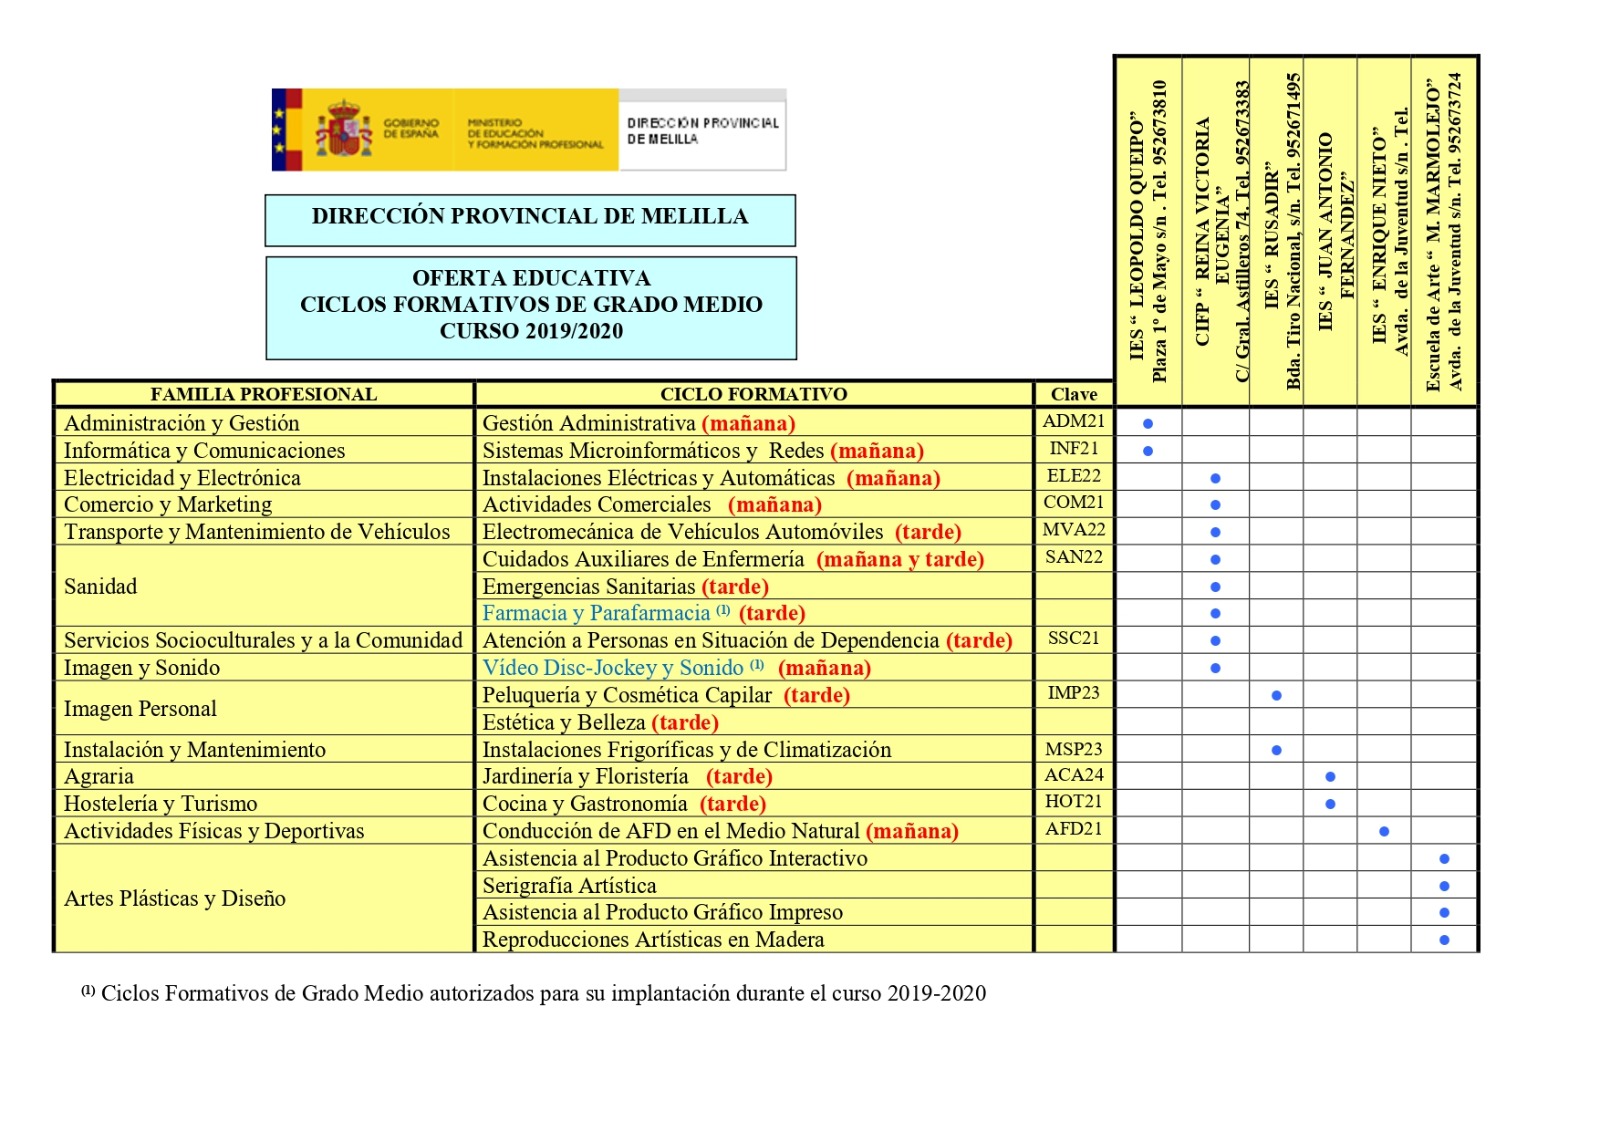 Citar Disfraces administración Oferta educativa FP Melilla 2020 - Noticias - Sistema Educativo Digital